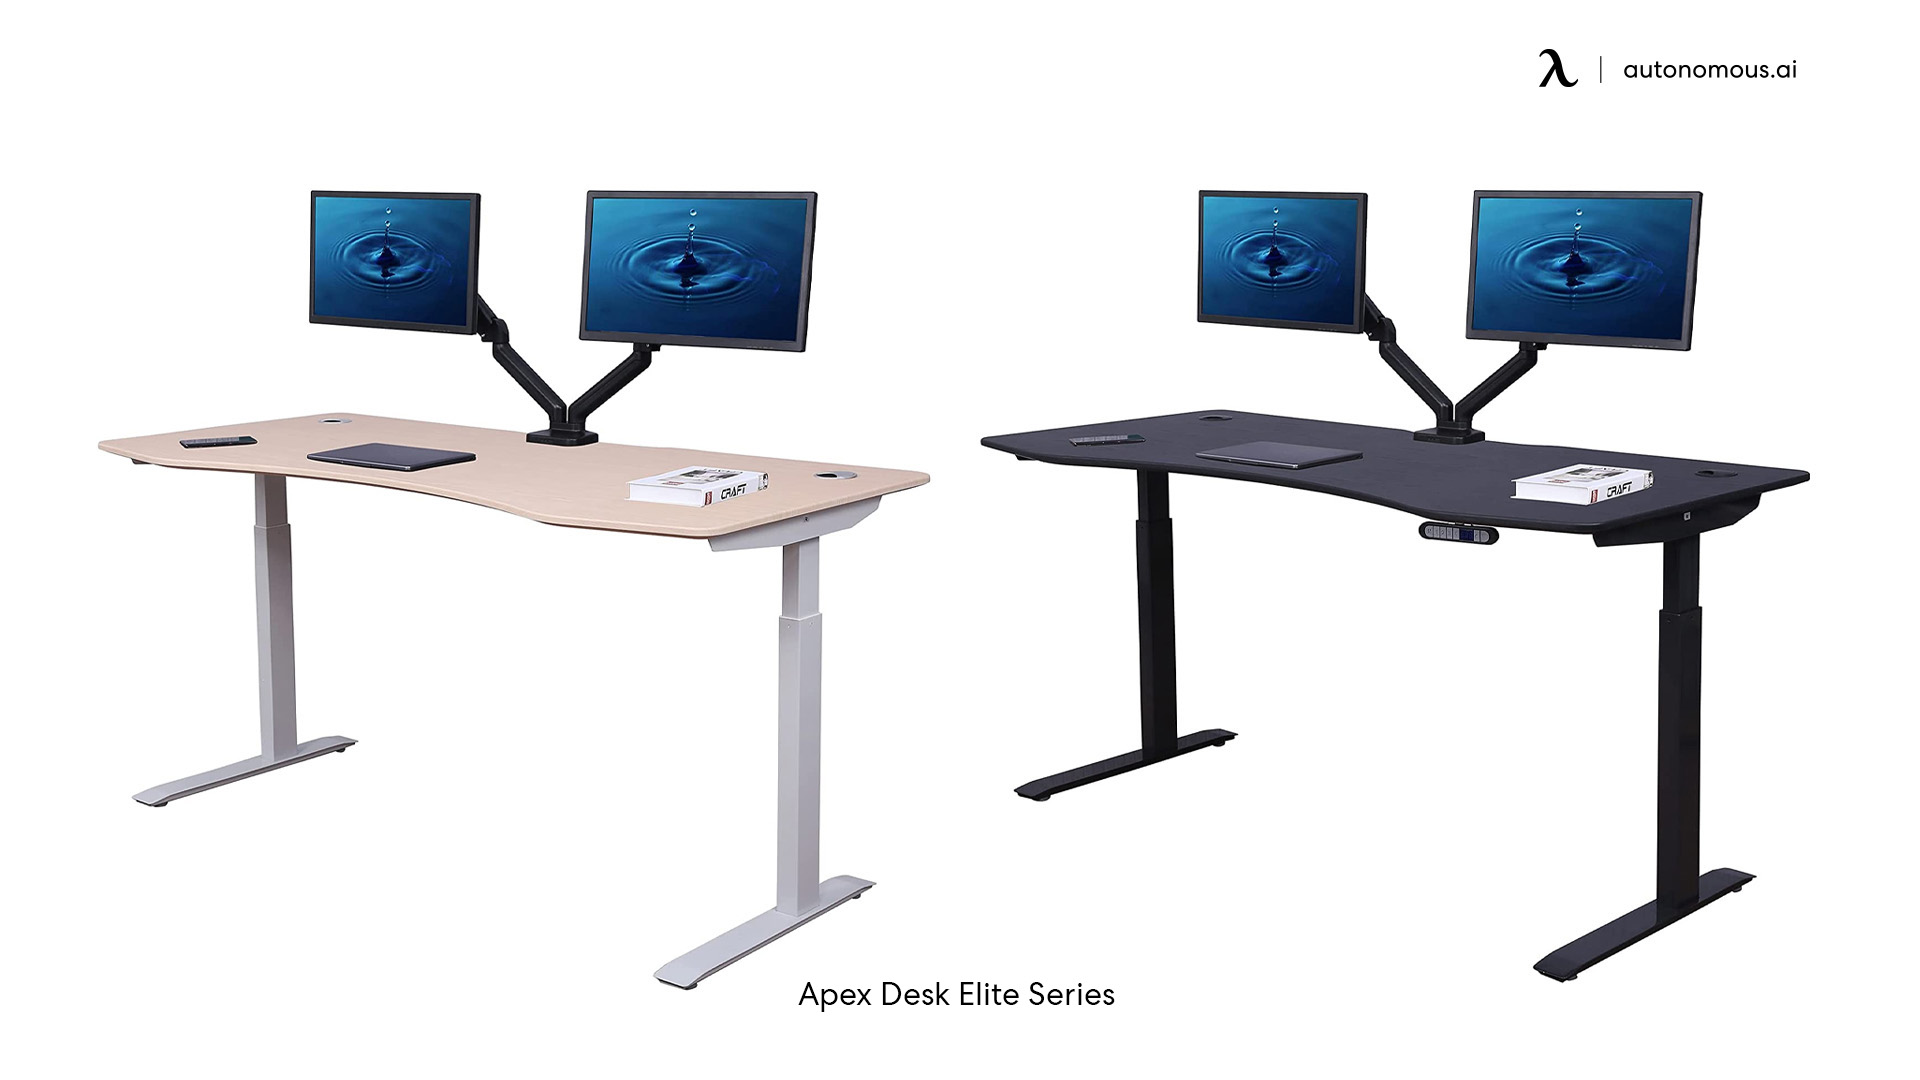 Apex Desk Elite Series